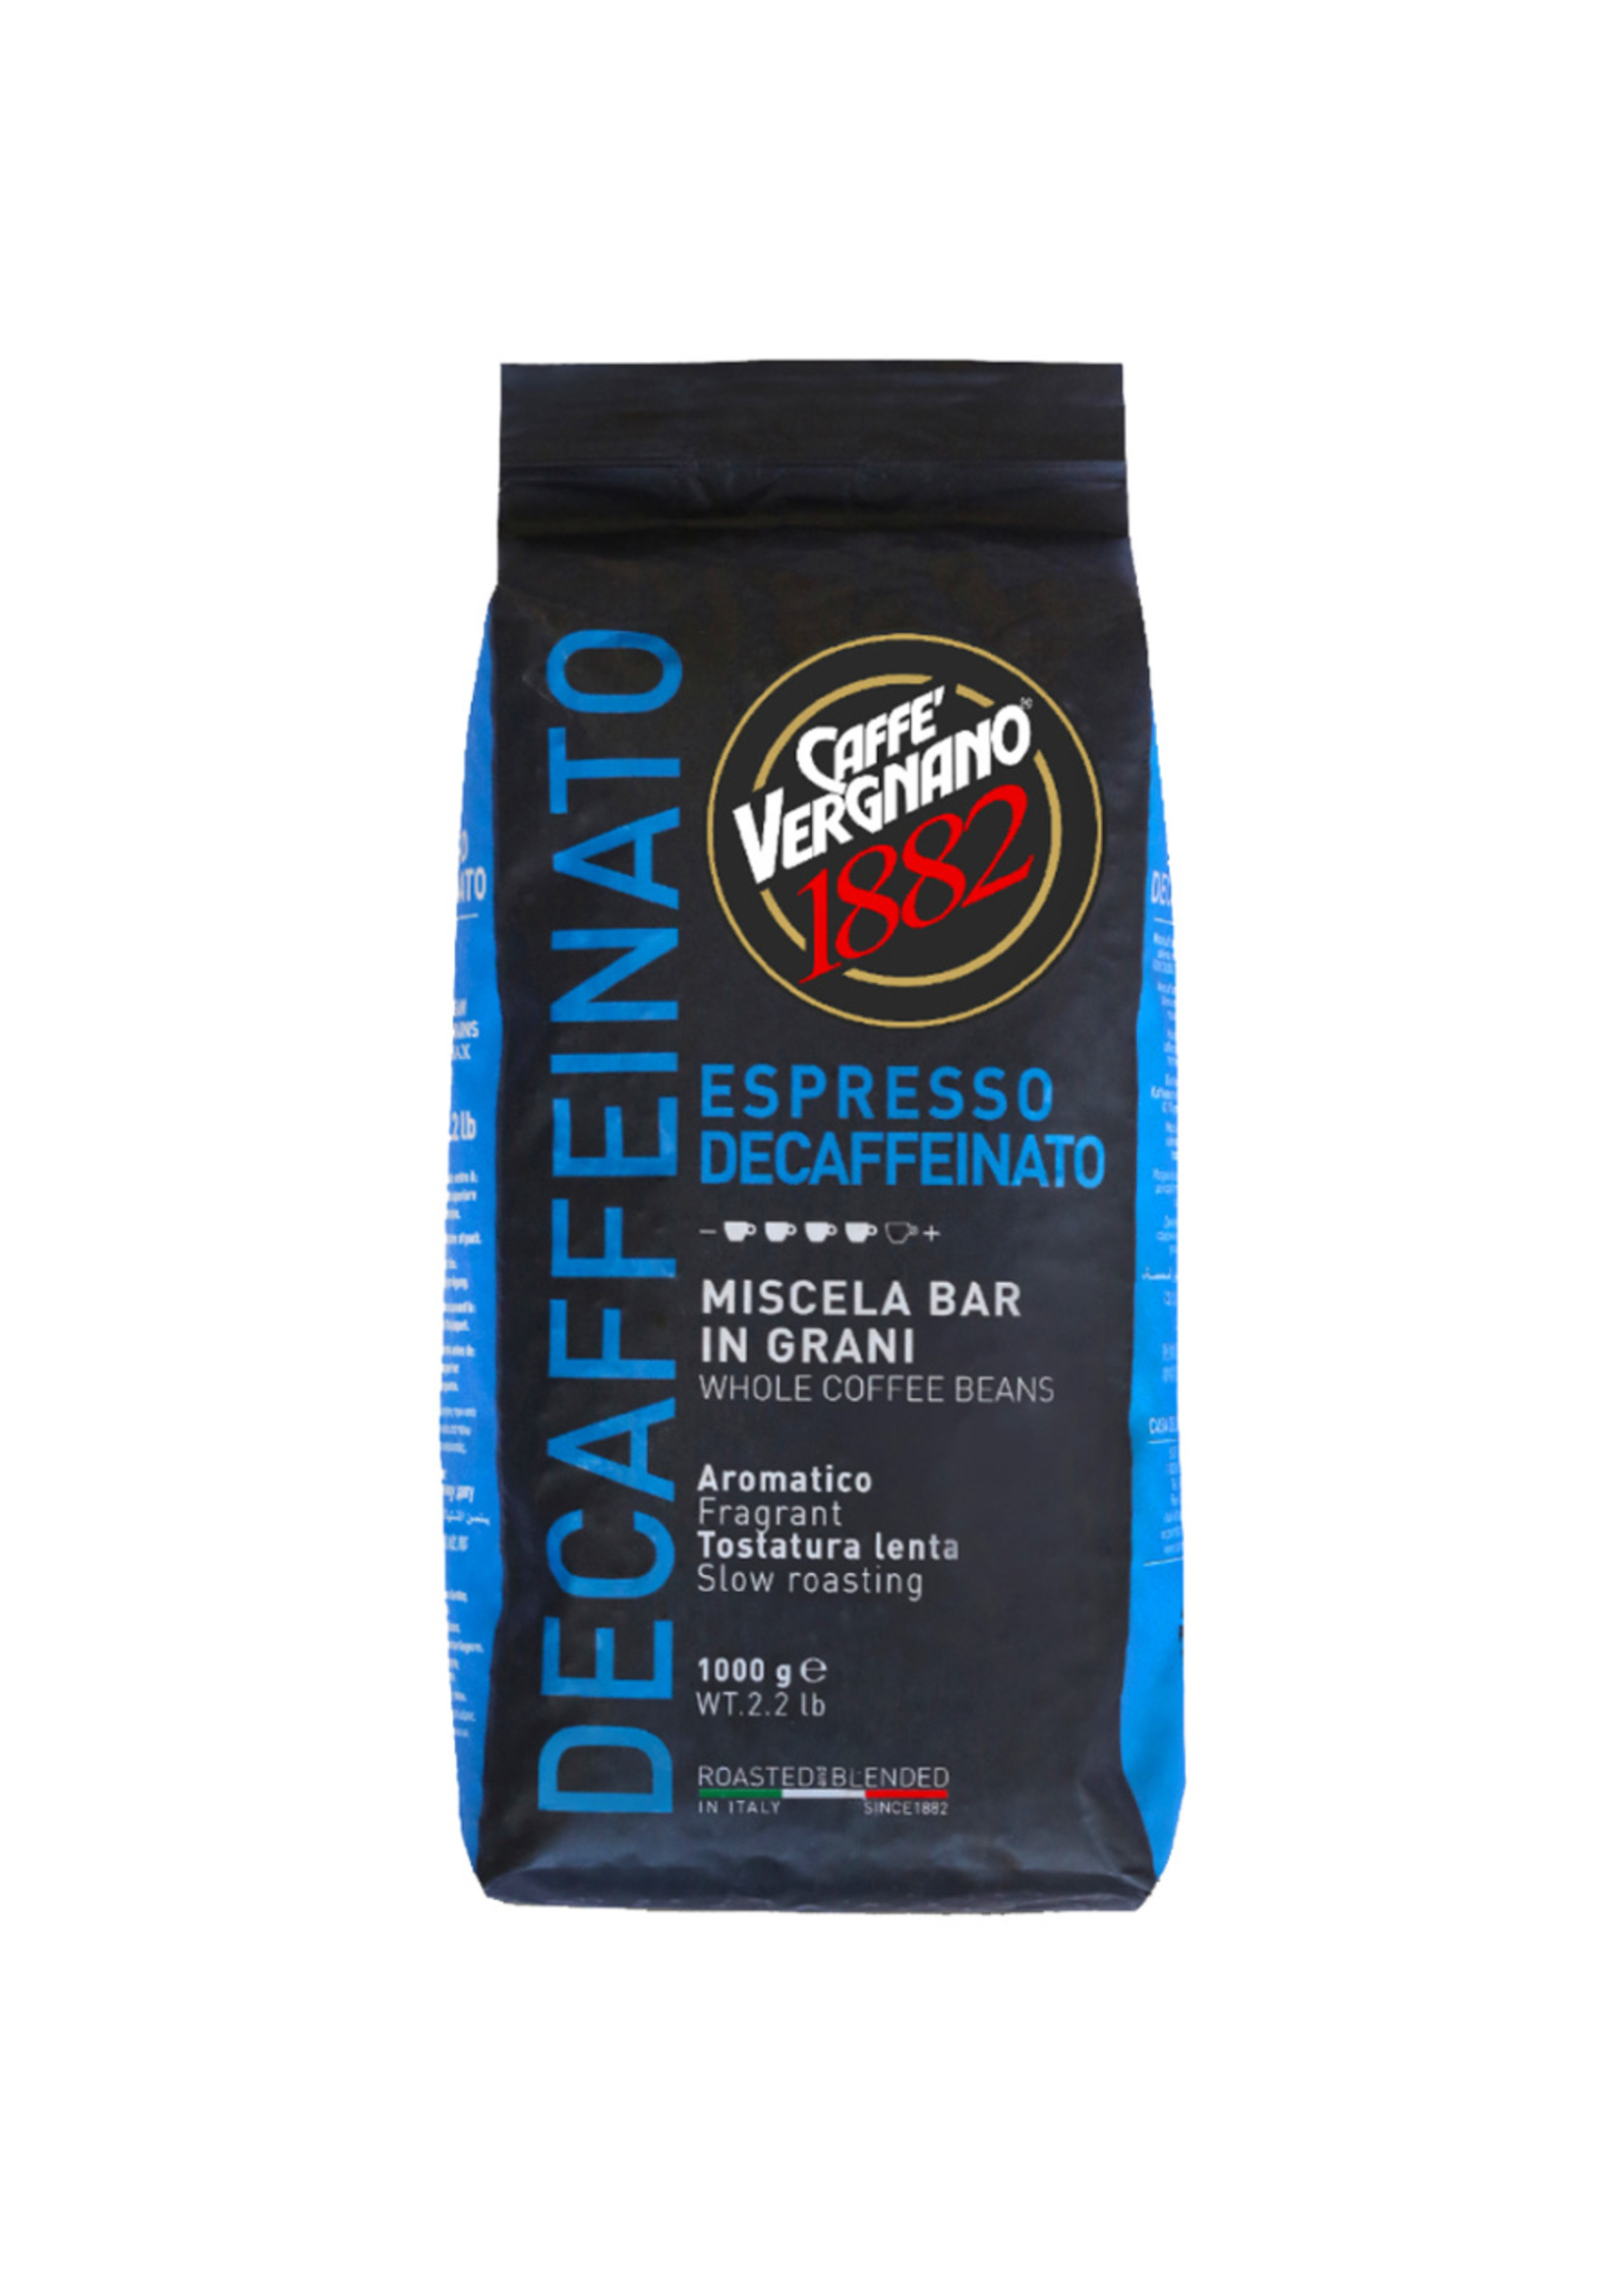 Caffe Vergnano 1882 Vergnano Espresso Decaffeinato Kaffeebohnen 1 kg